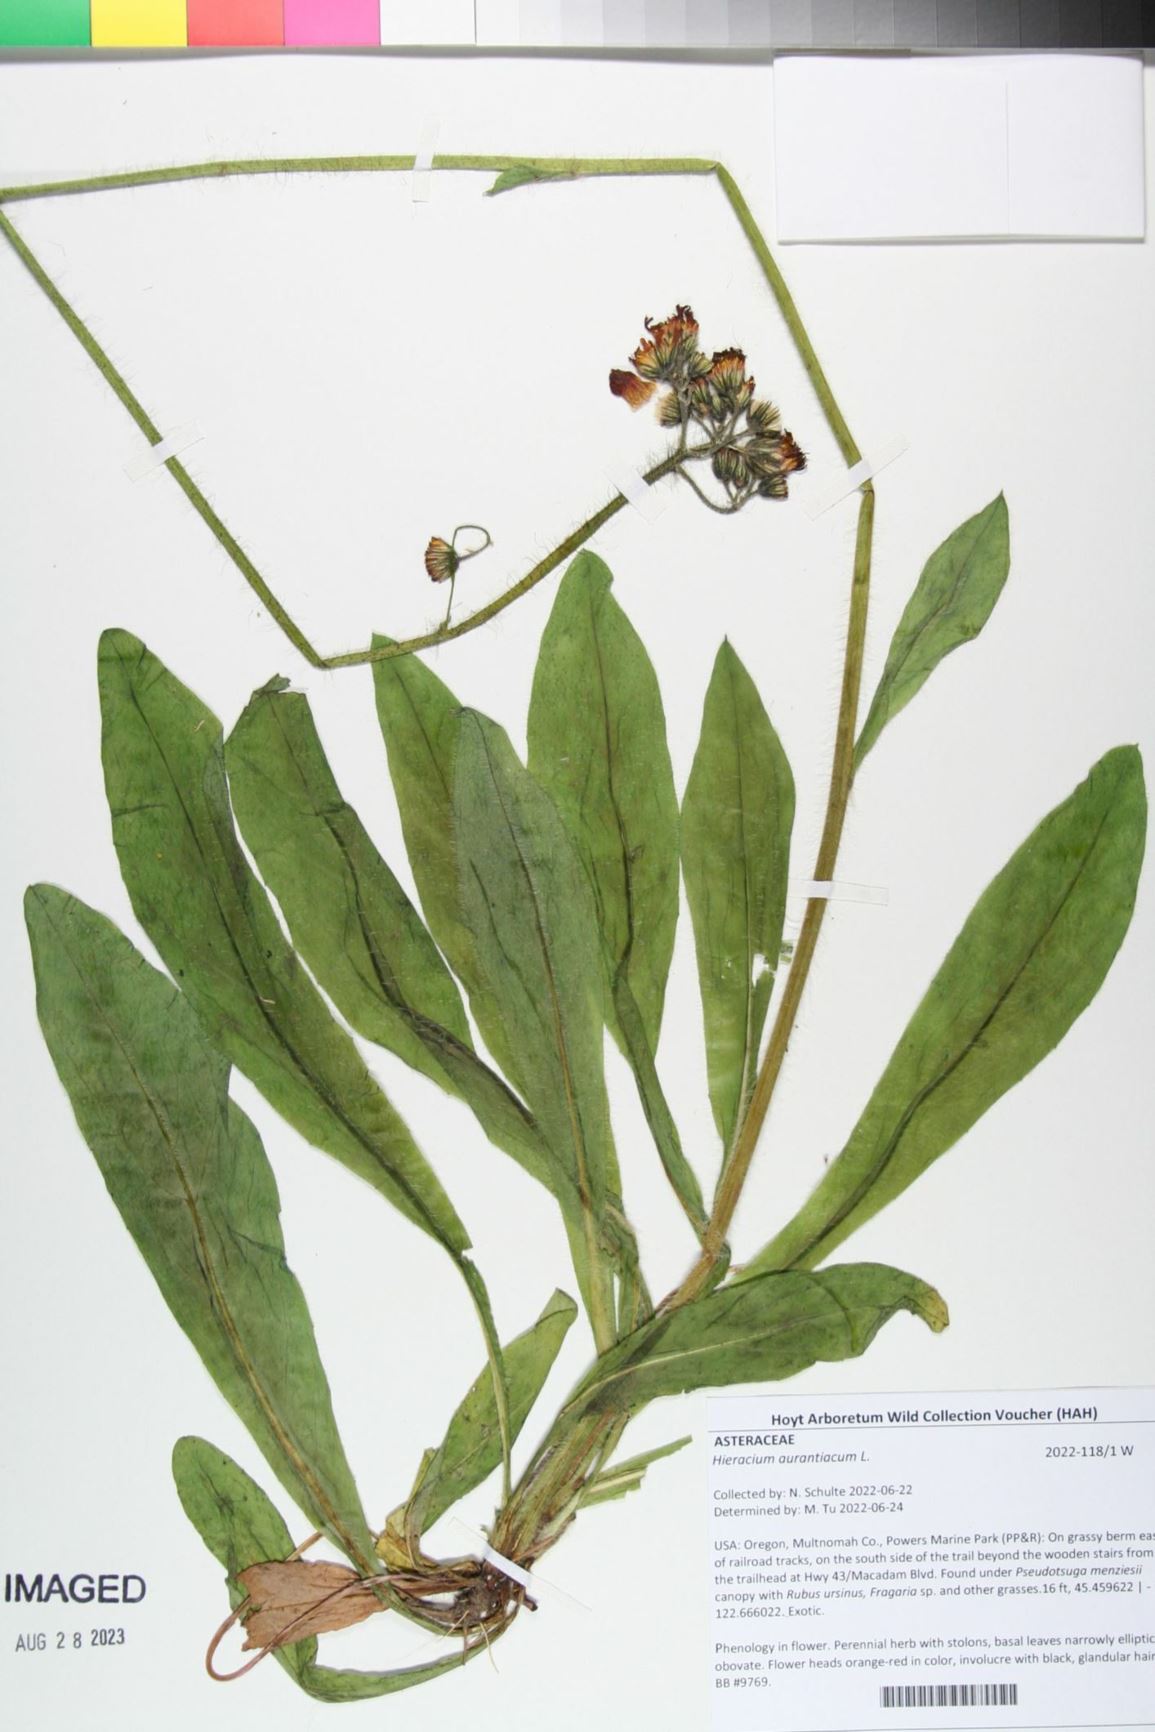 Hieracium aurantiacum - orange hawkweed